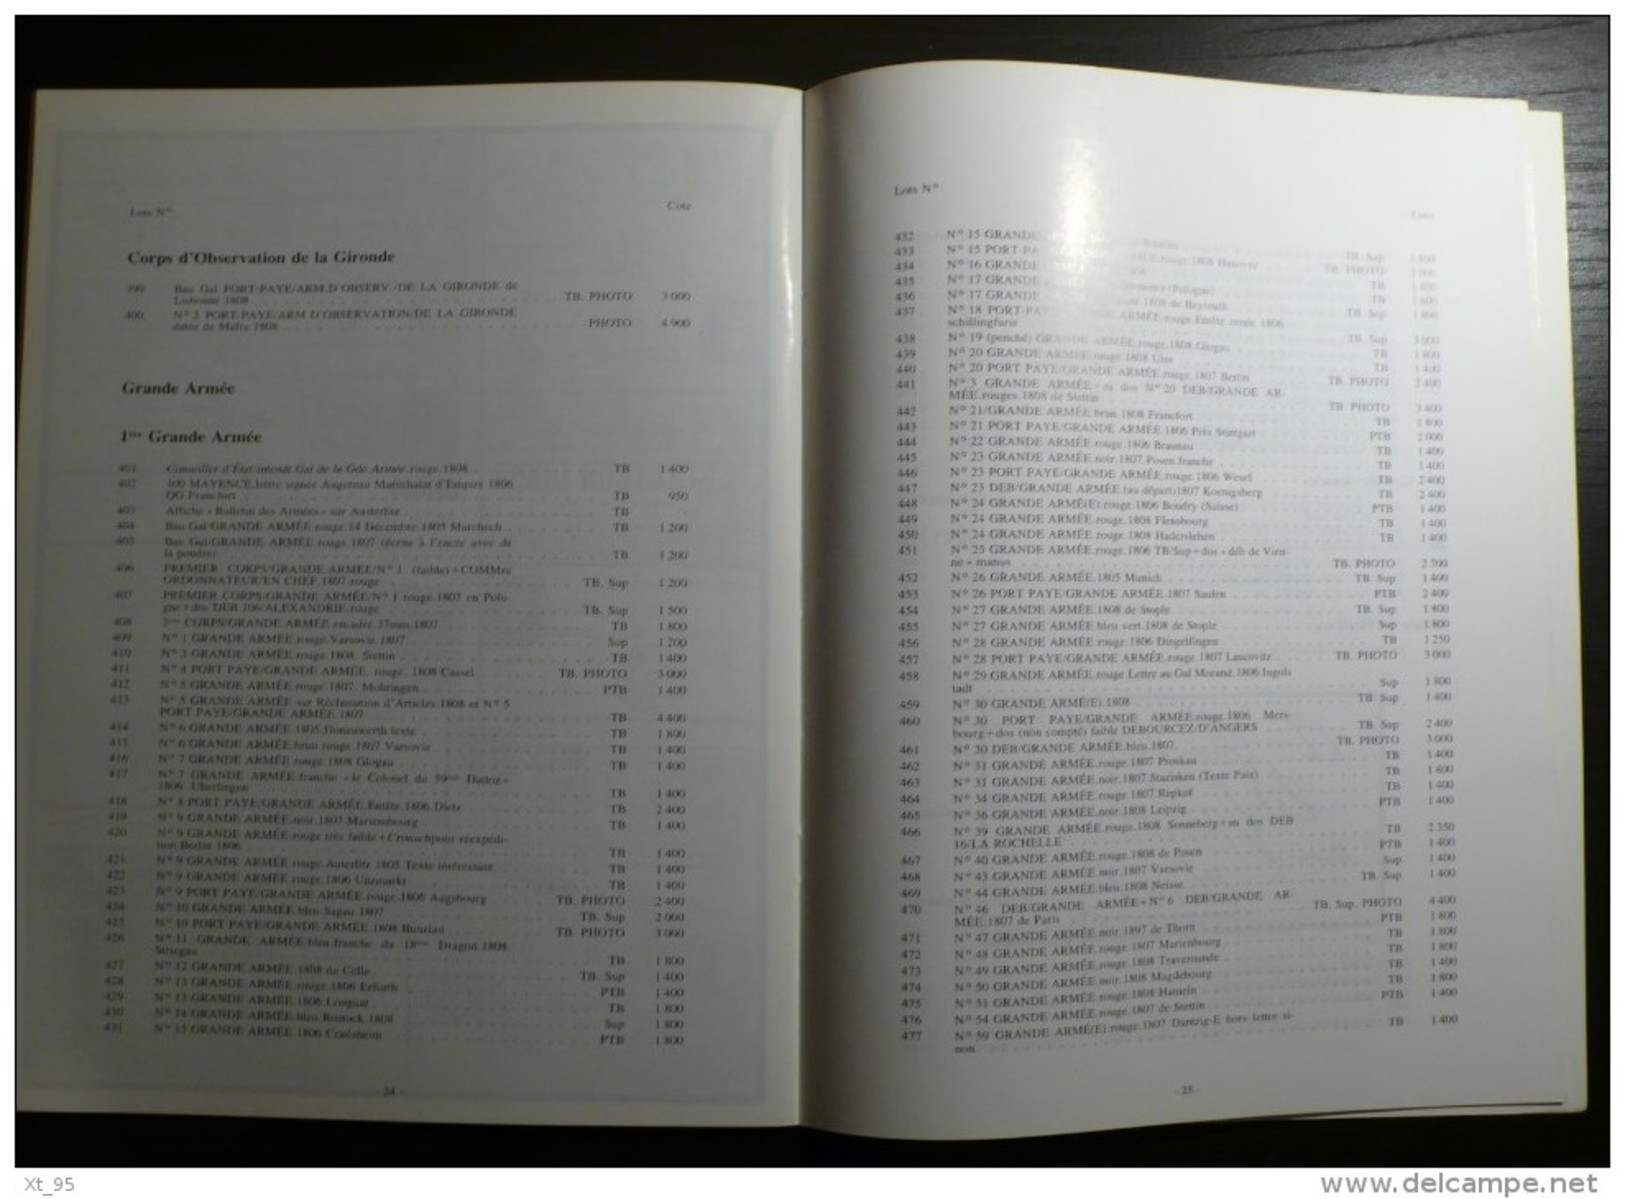 Vente Aux Encheres Collection Dubus - 1988 - 40 Pages - Catalogi Van Veilinghuizen